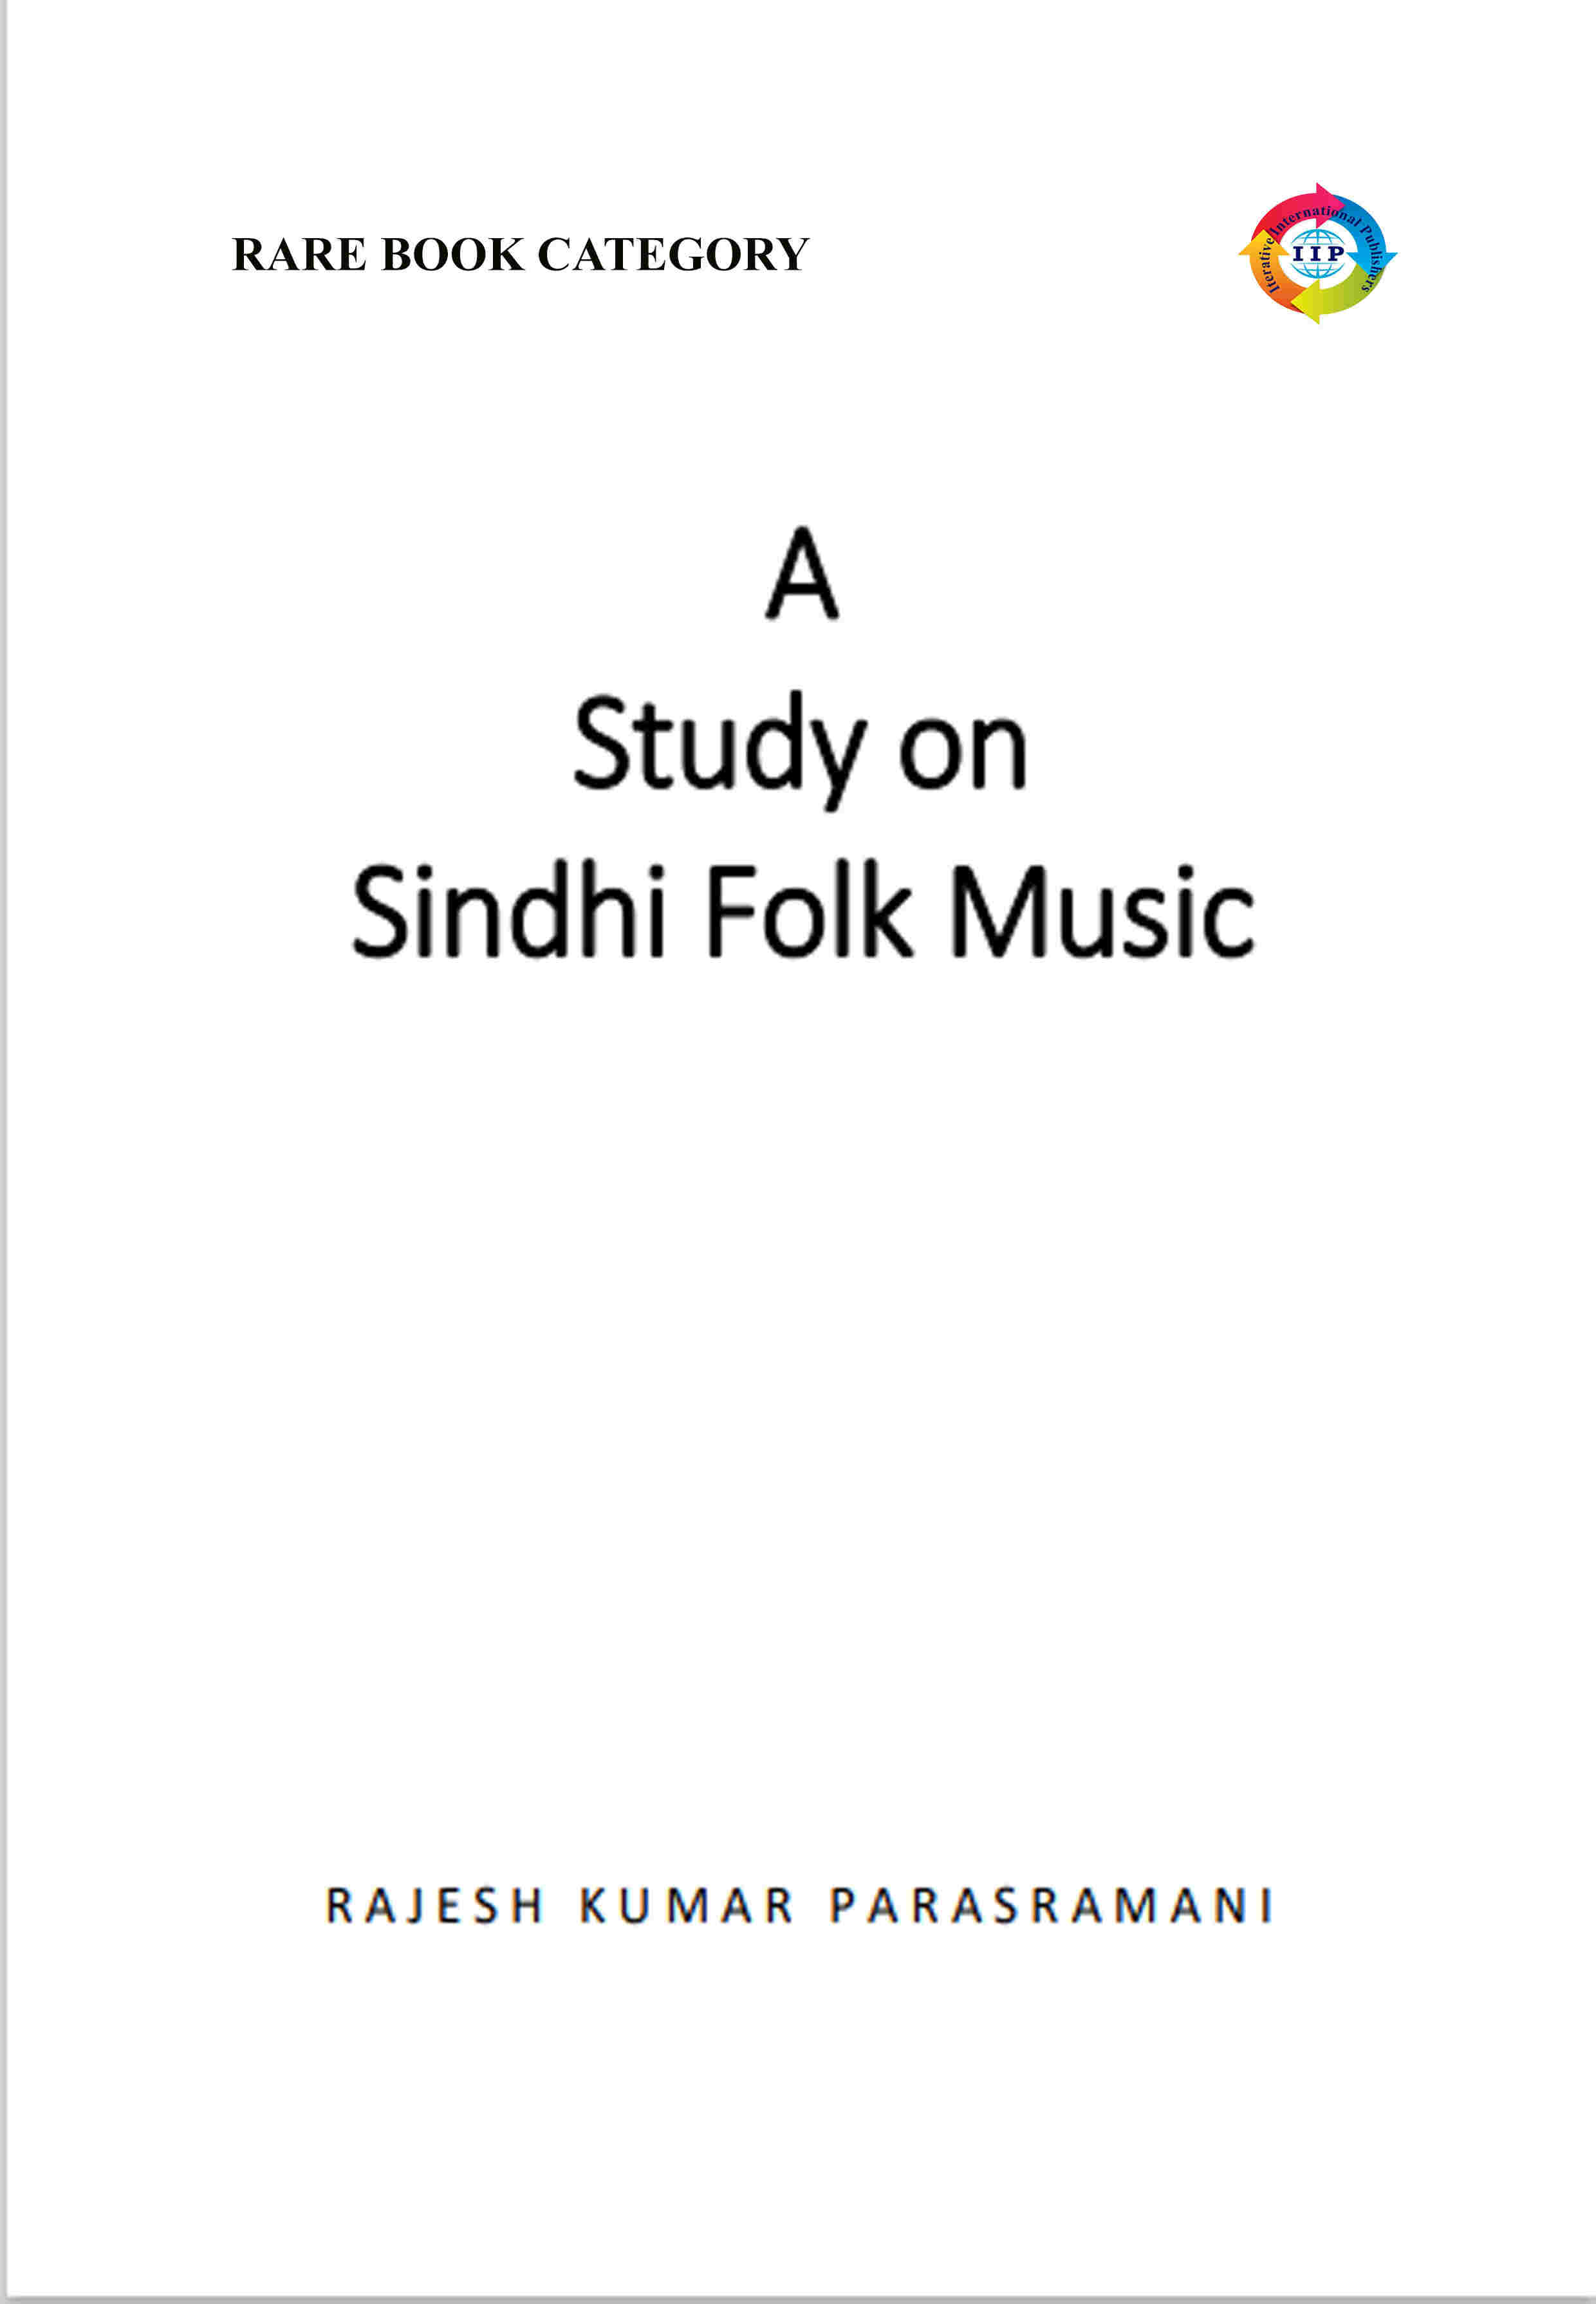 A STUDY ON SINDHI FOLK MUSIC